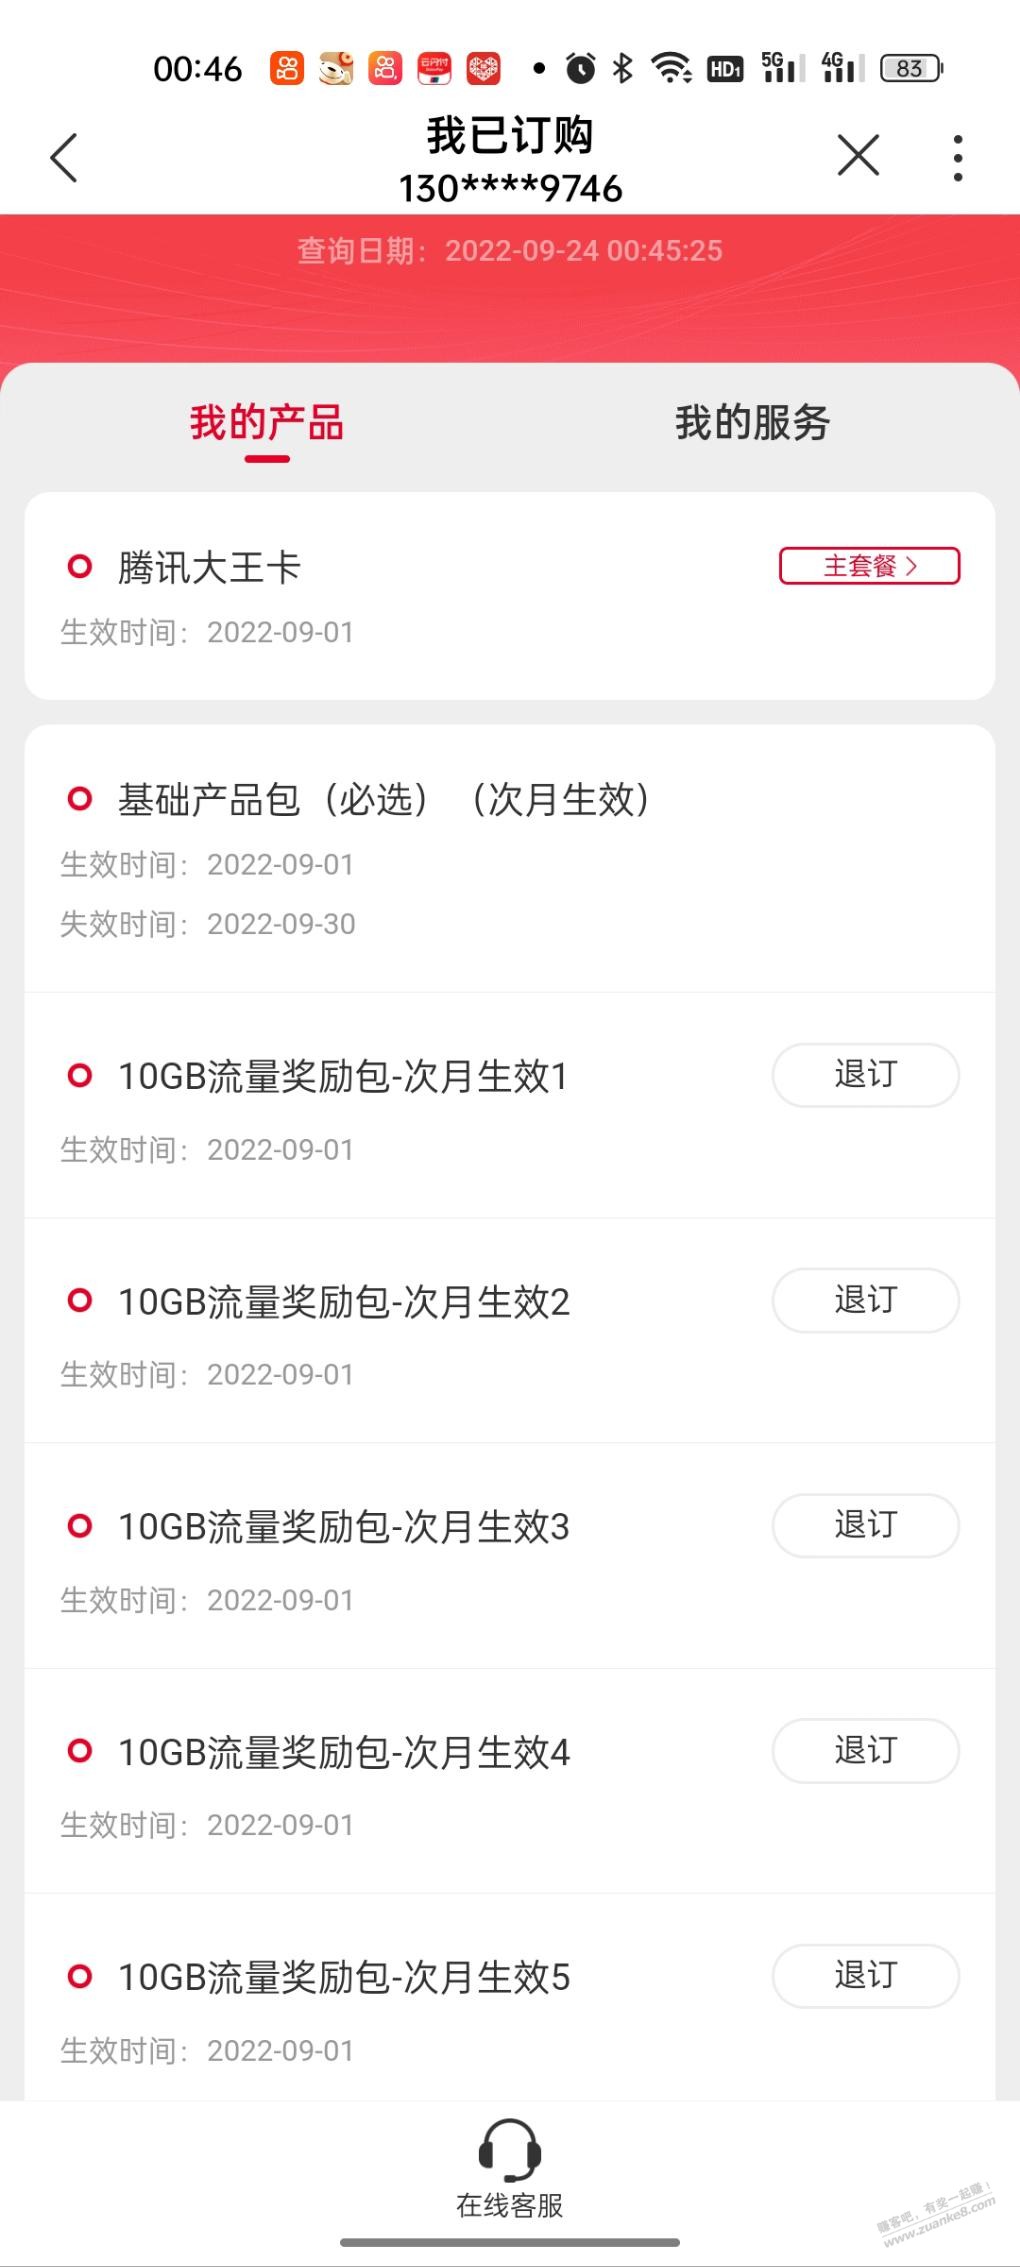 腾讯王卡基础业务包长沙显示取消-70G流量会不会一起取消了